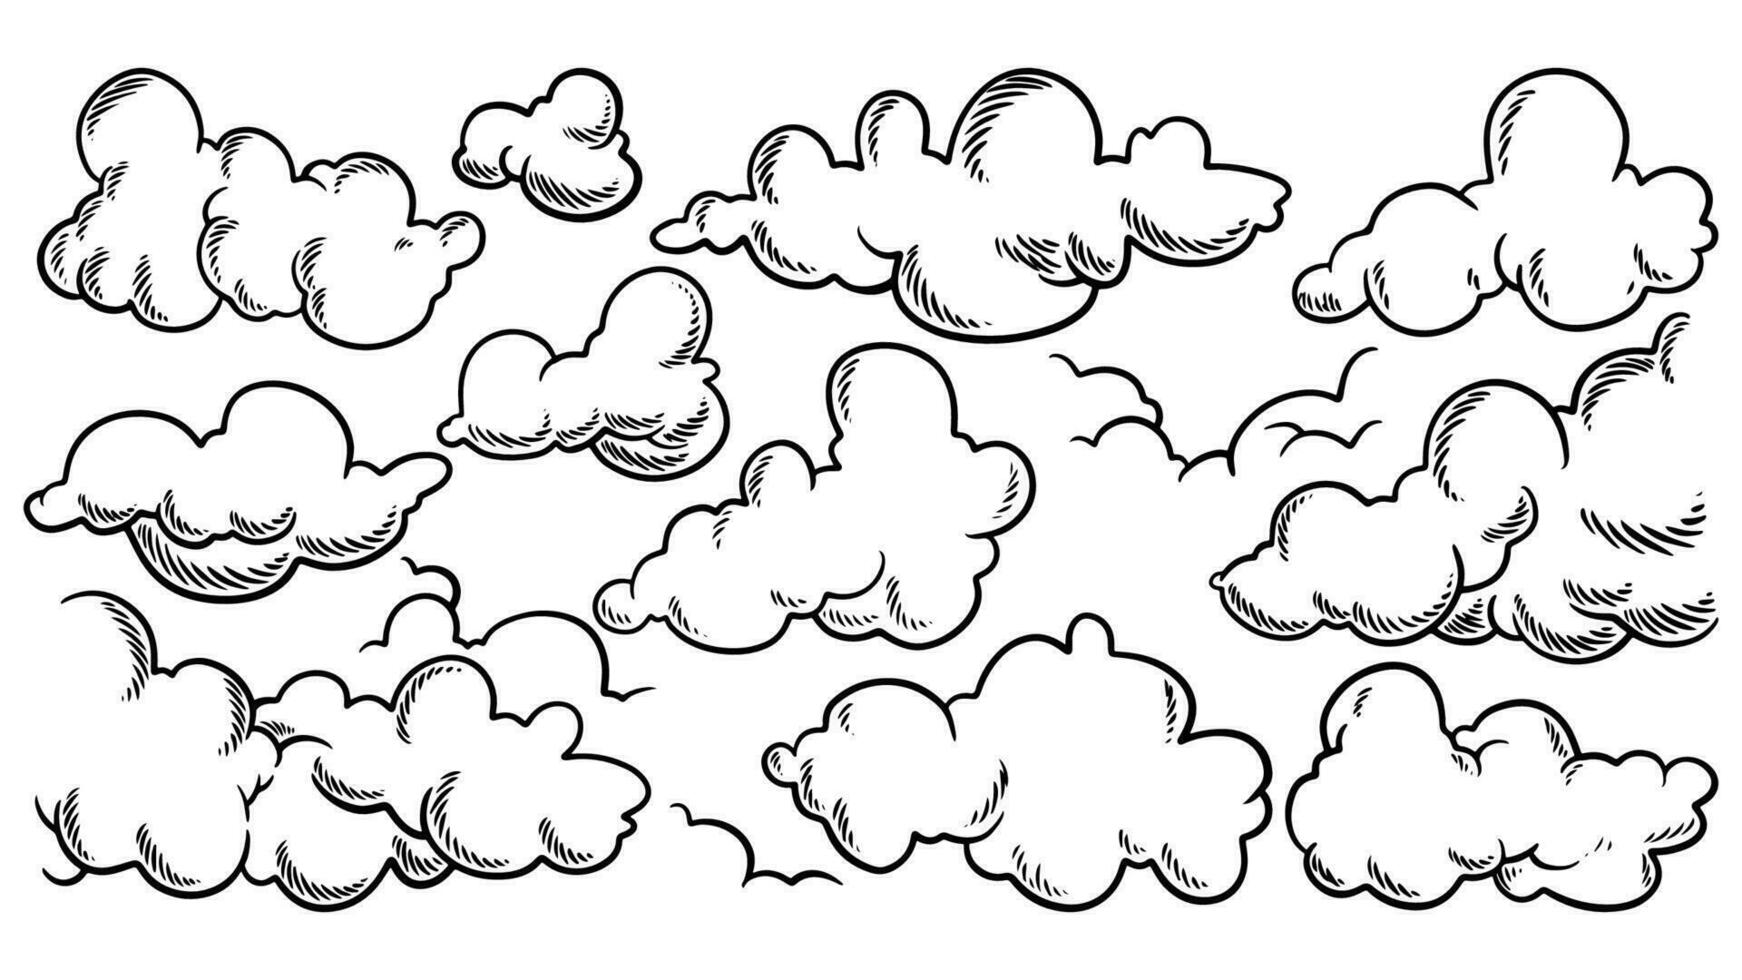 Wolken Zeichnung Satz. Vektor Hand gezeichnet Karikatur von Wolke.